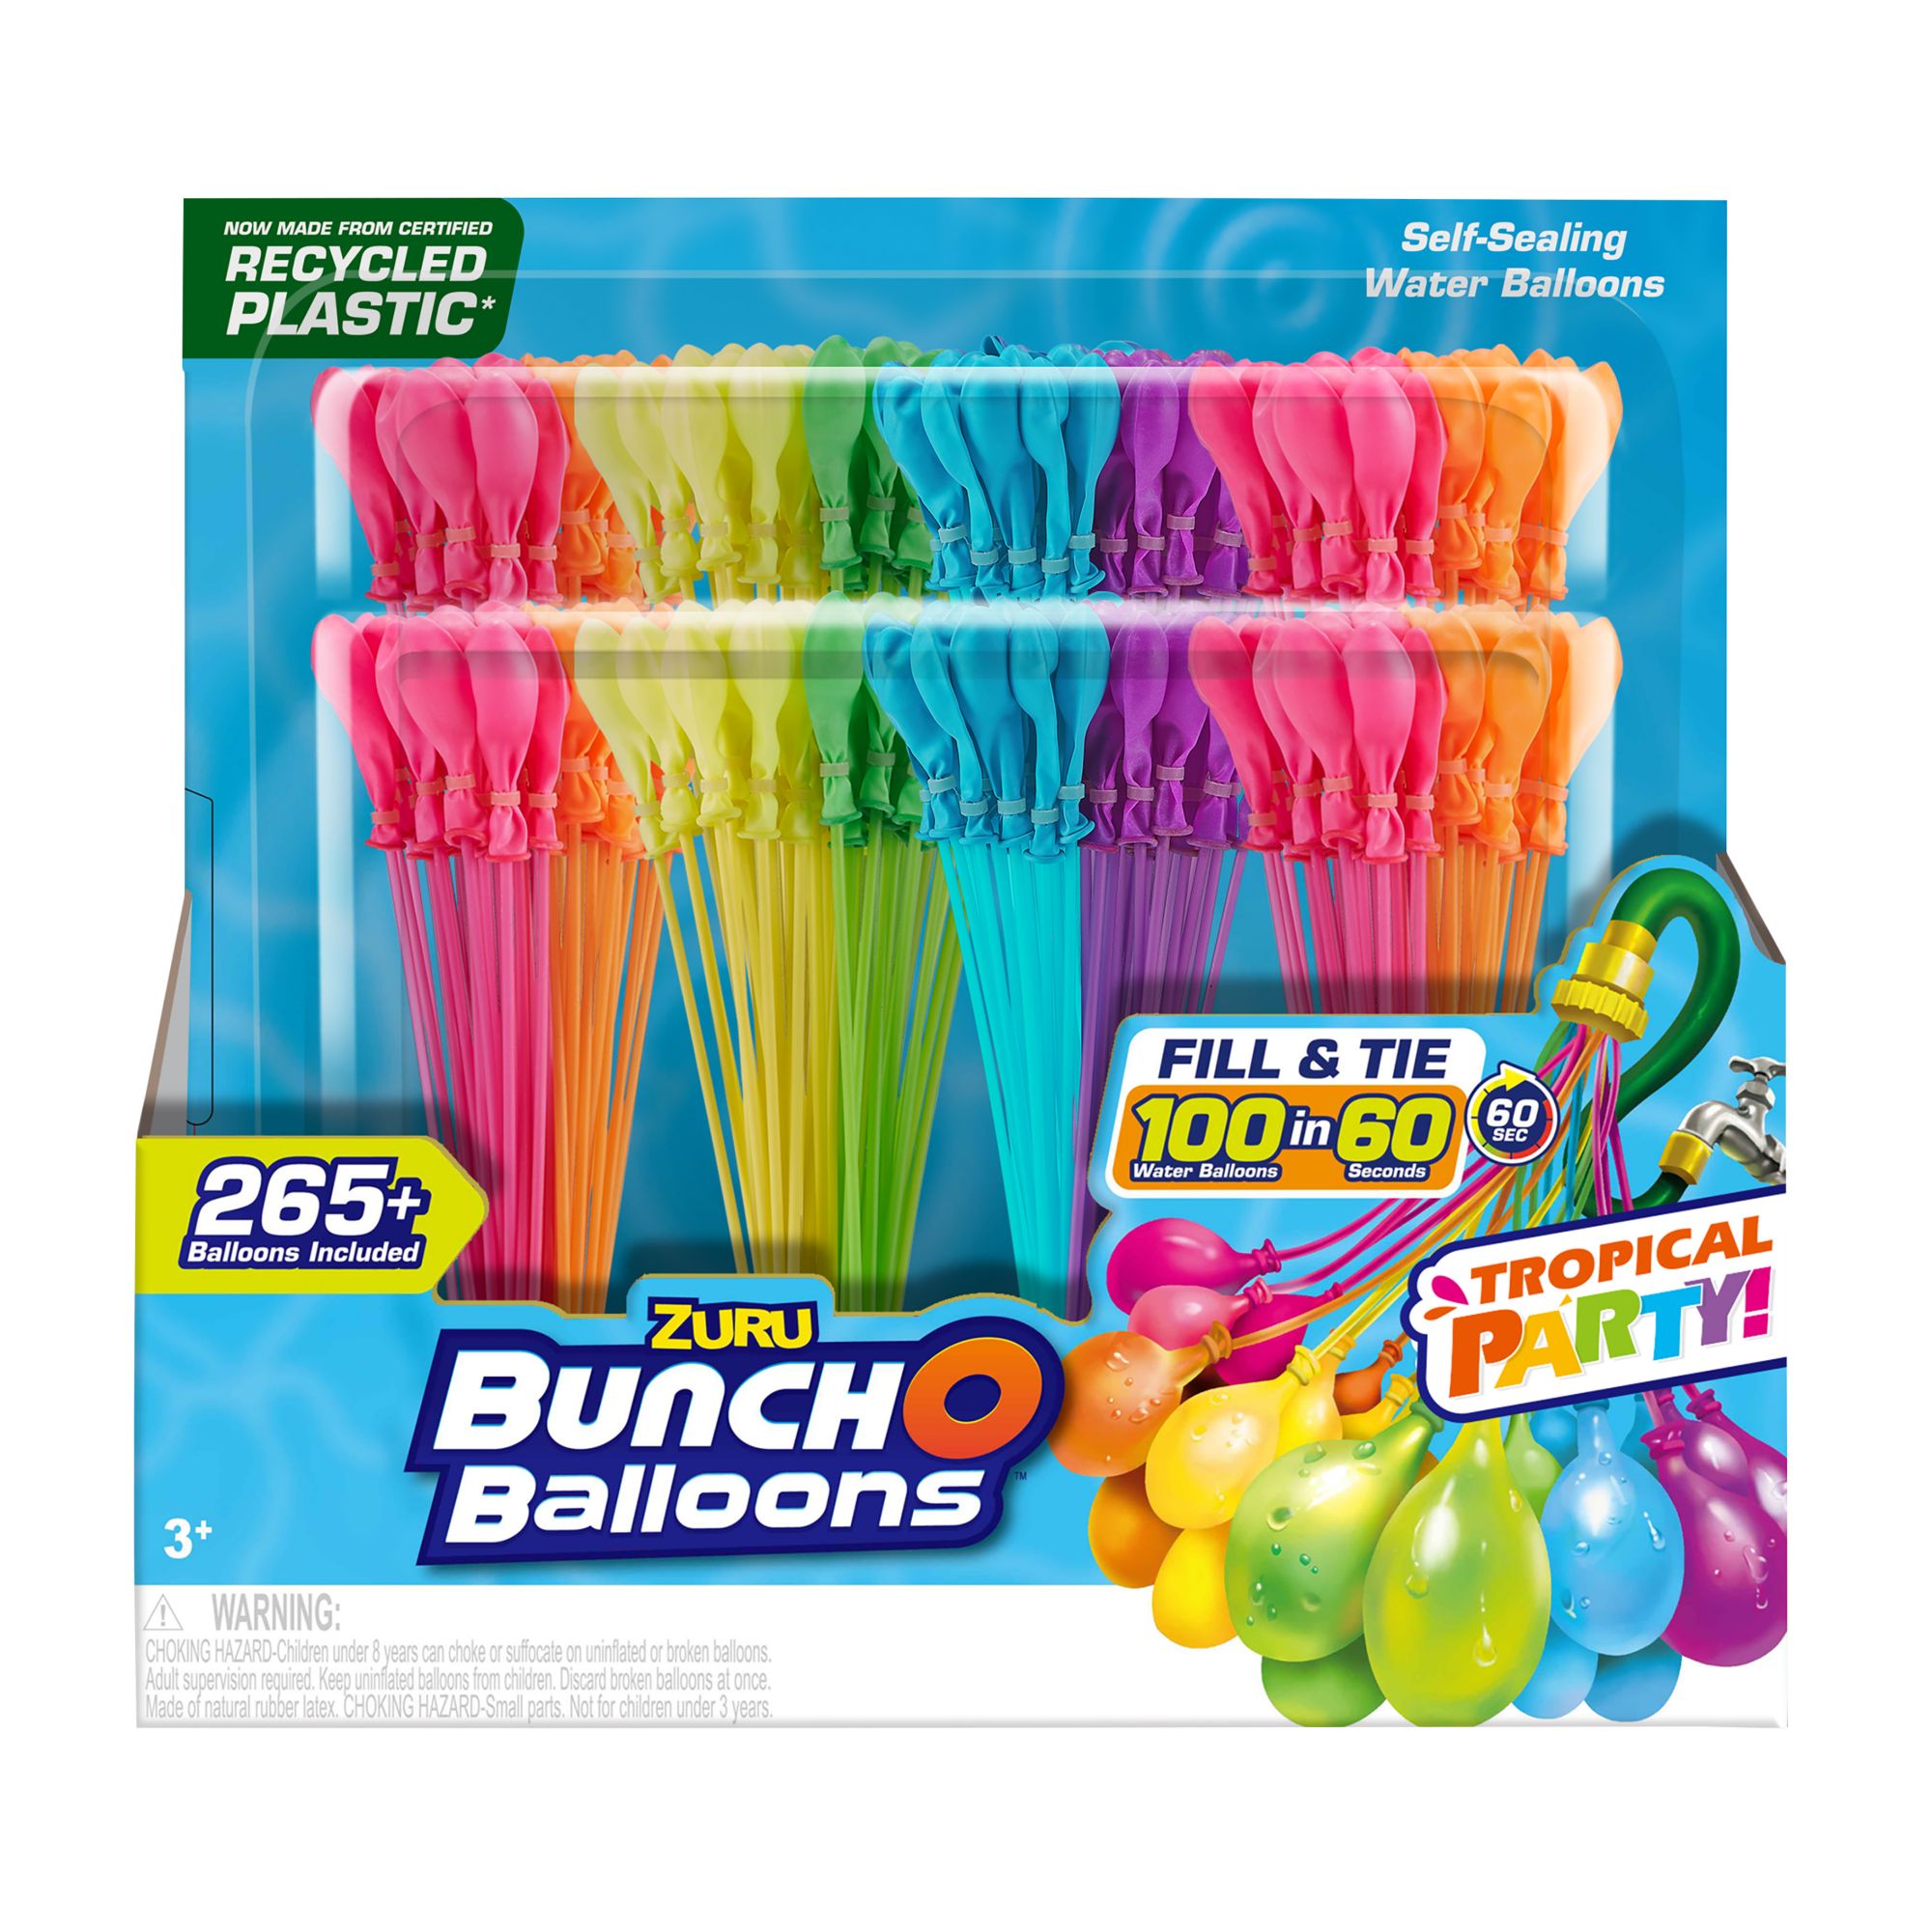 ZURU Bunch O Balloons Rapid Fill Water Balloons